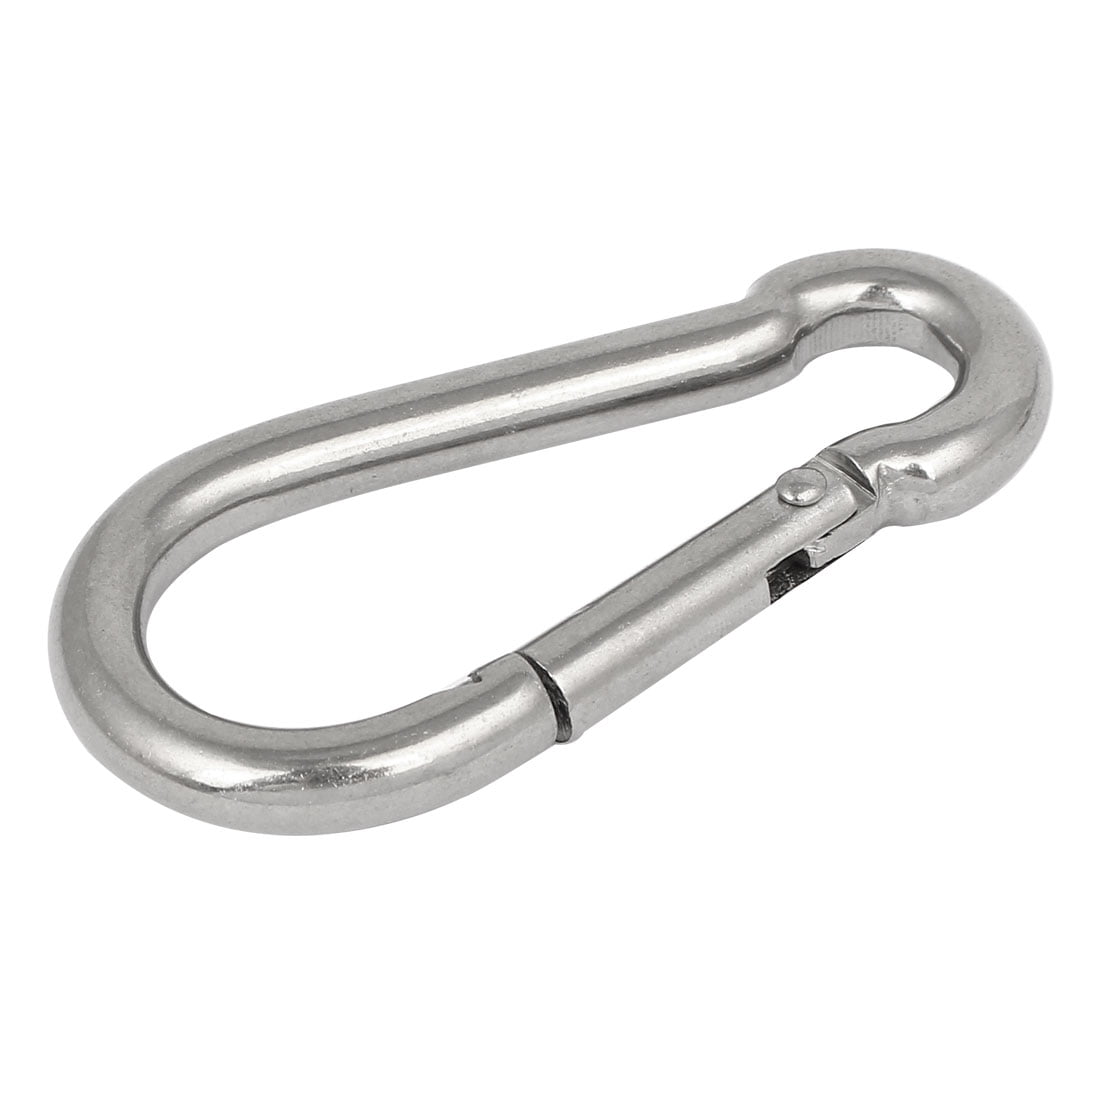 Ochoos 304 Stainless Steel Multifunctional Lock Hook Quick Link Screw Lock Ring Hook Carbiner Color: M3.5 